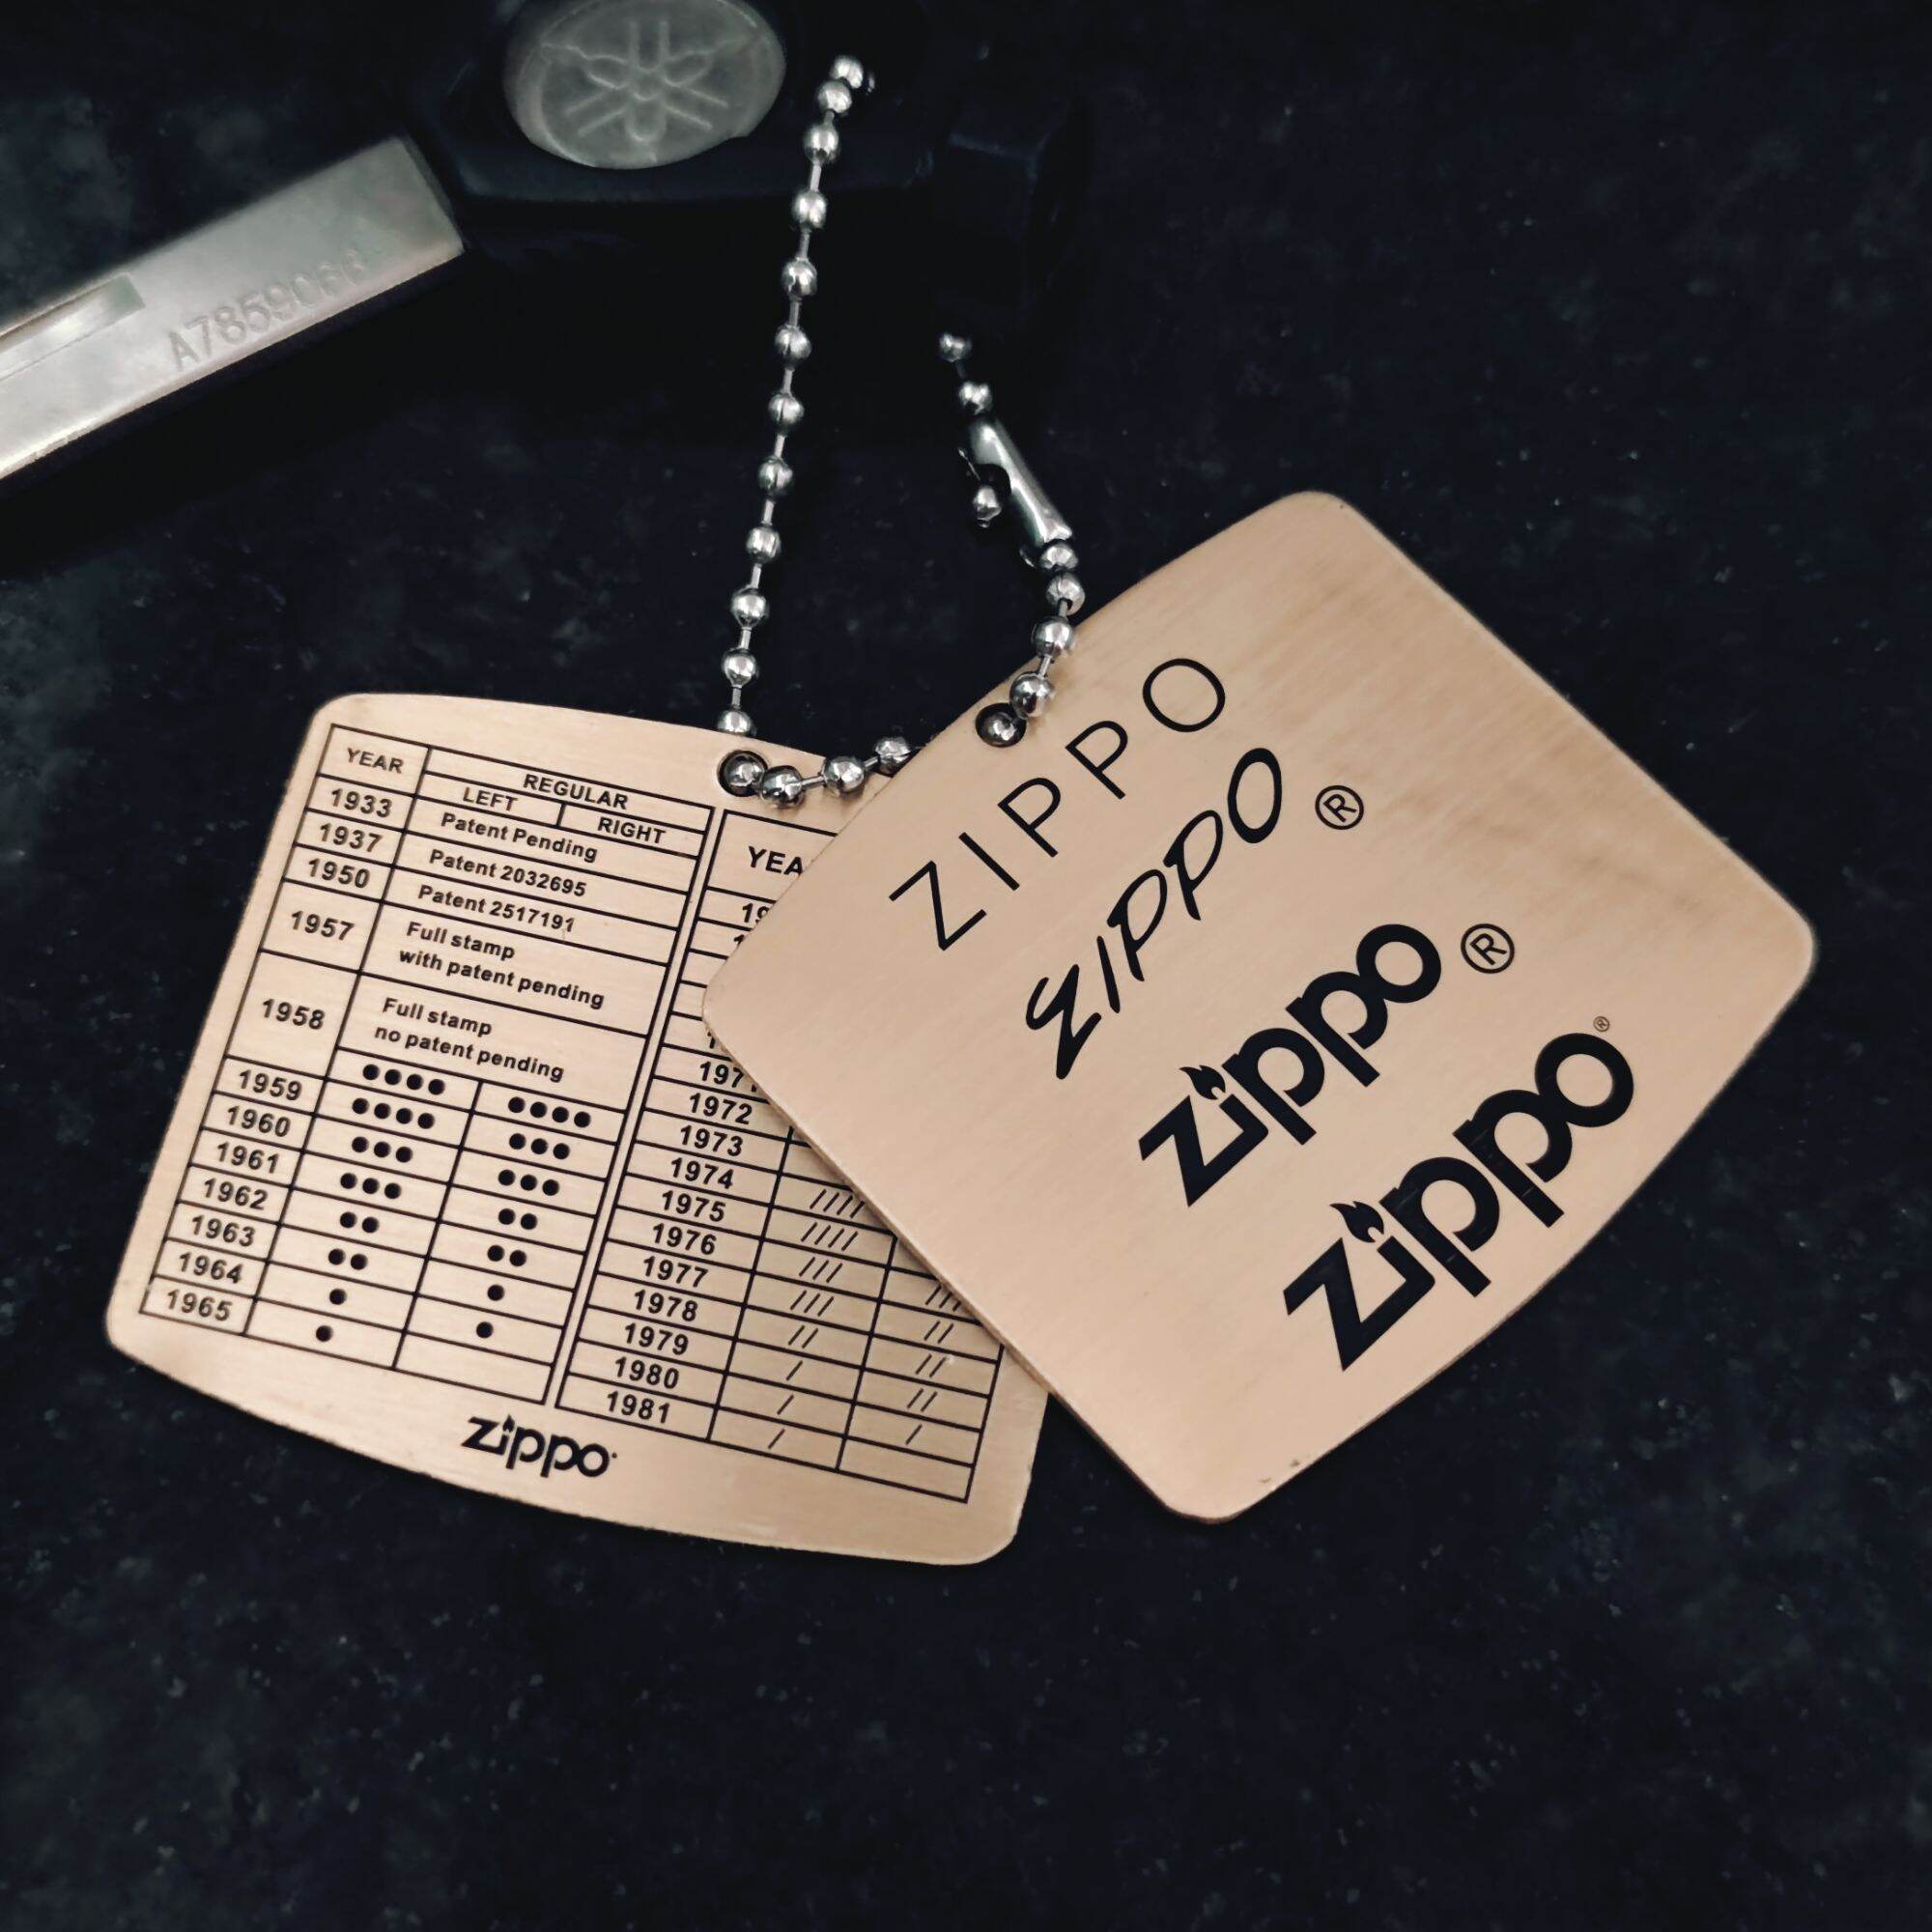 Phụ kiện bật lửa Zippo - thẻ bài móc khoá đồng Zippo chính hãng - kèm dây bi